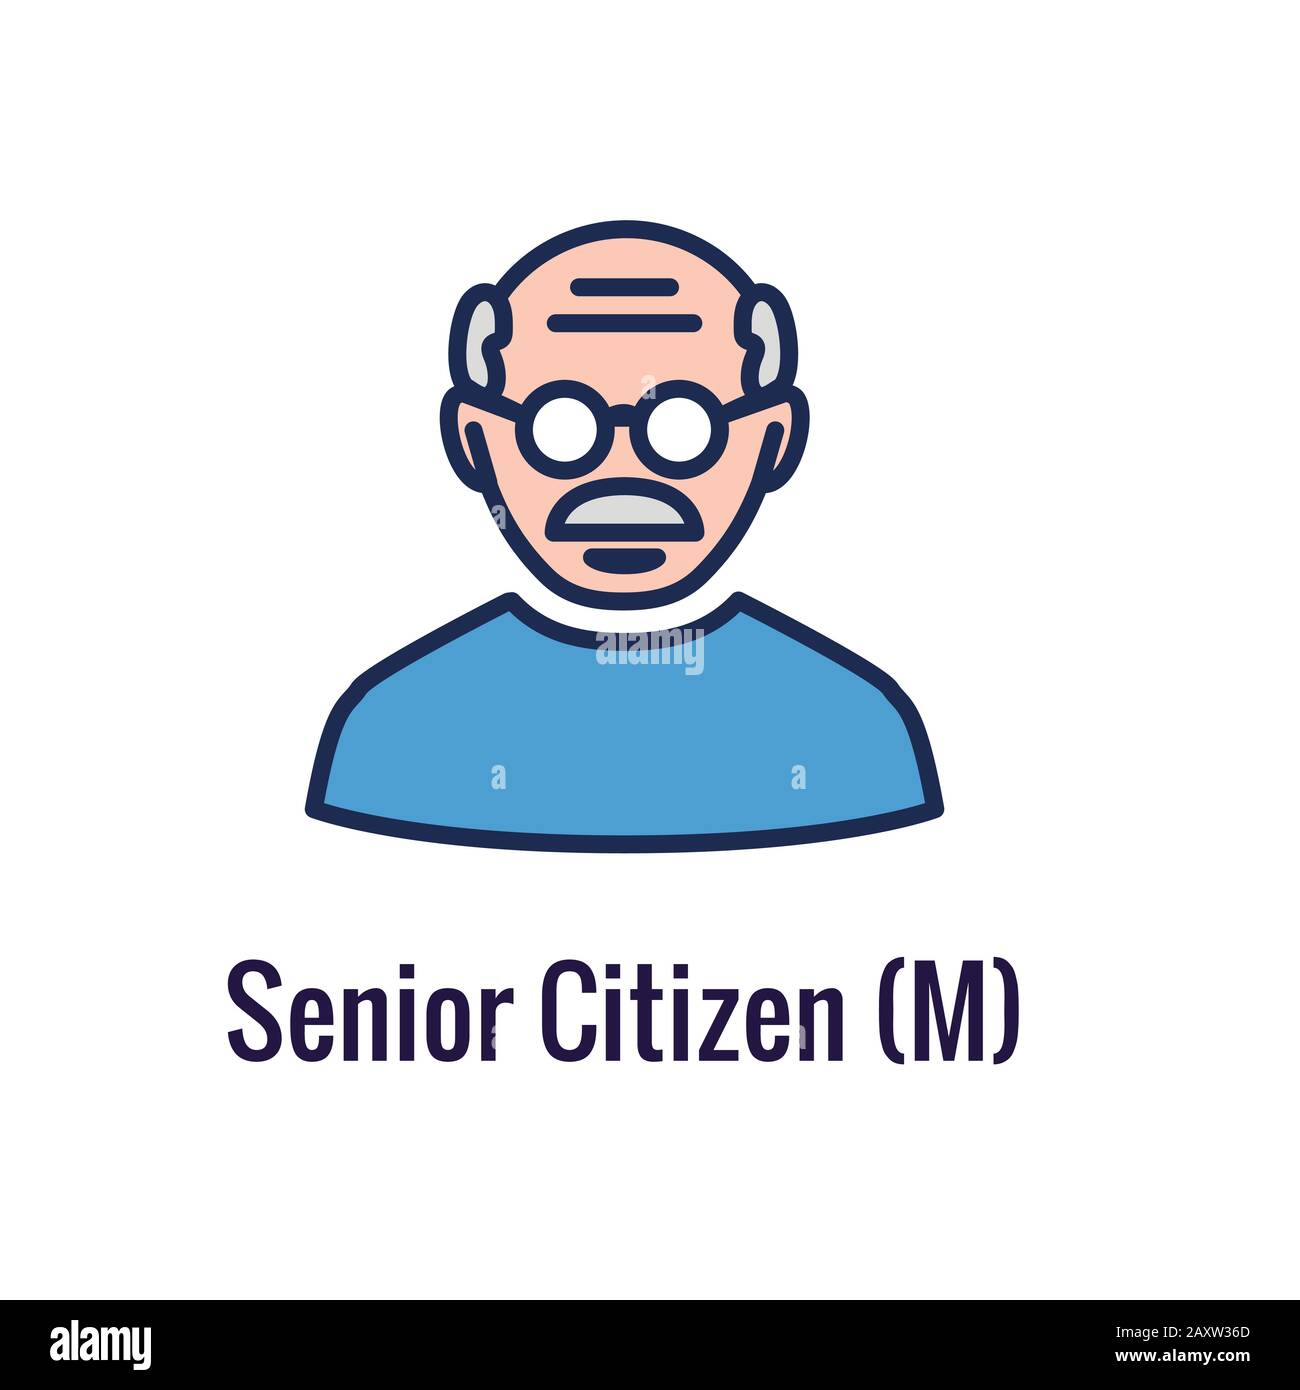 Generations - Ruhestand Icon Set mit Überlegungen für den Ruhestand Stock Vektor